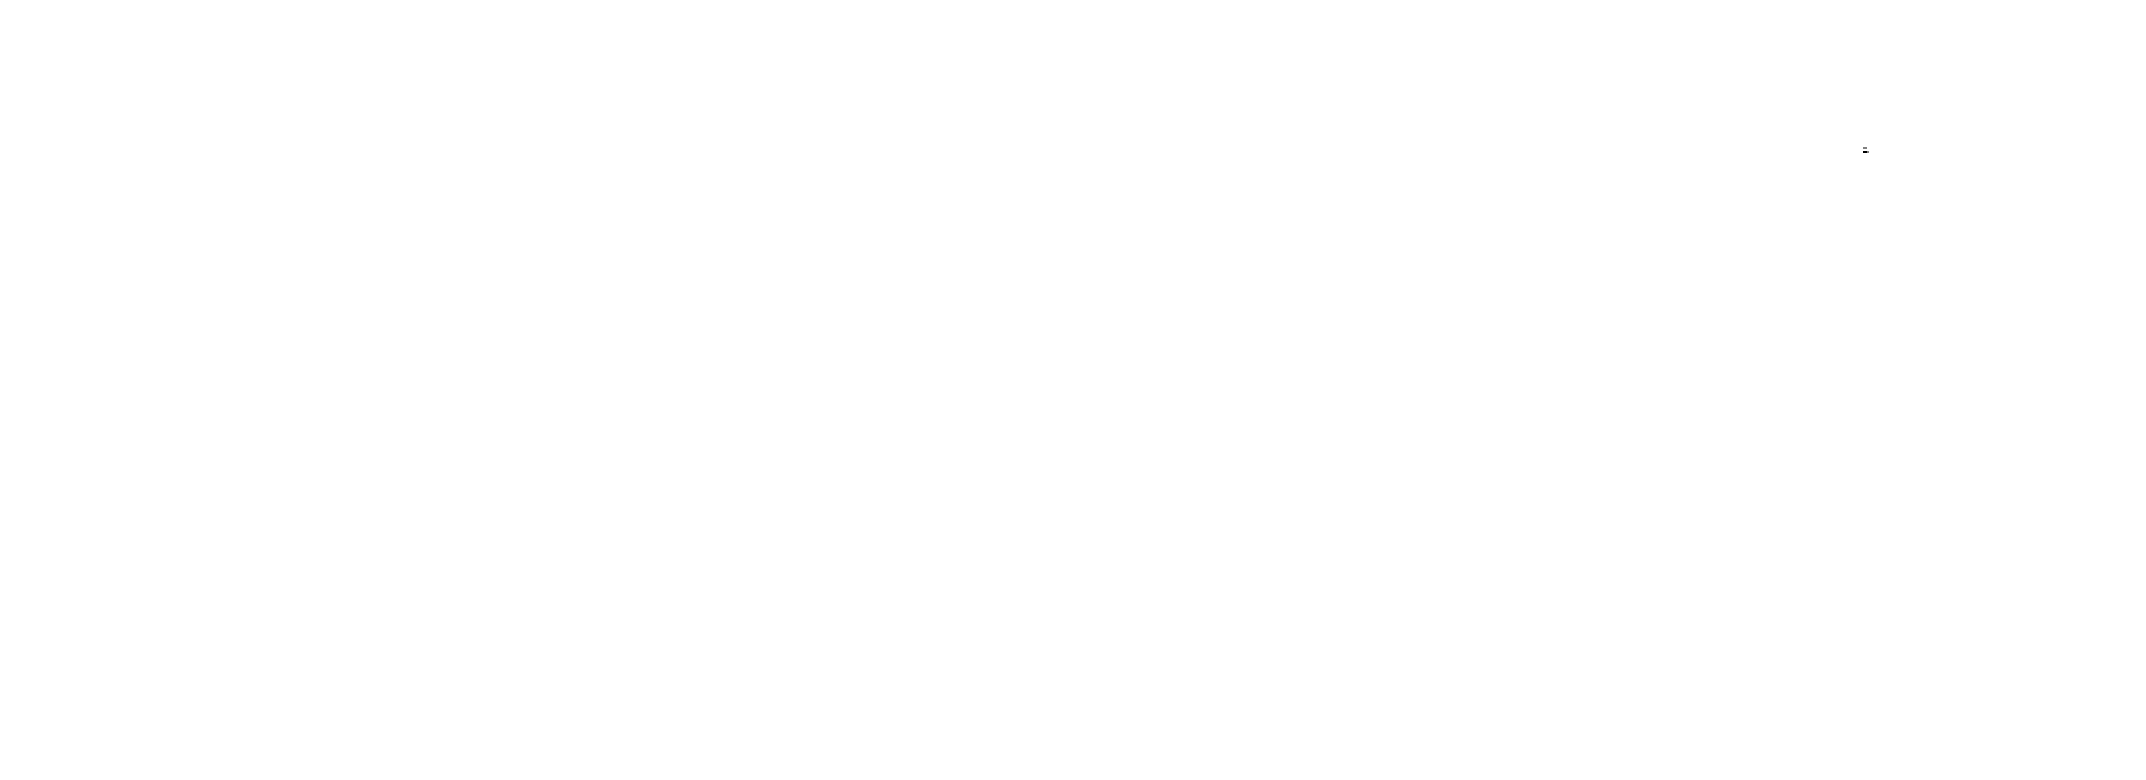 Abaco_logo (1)